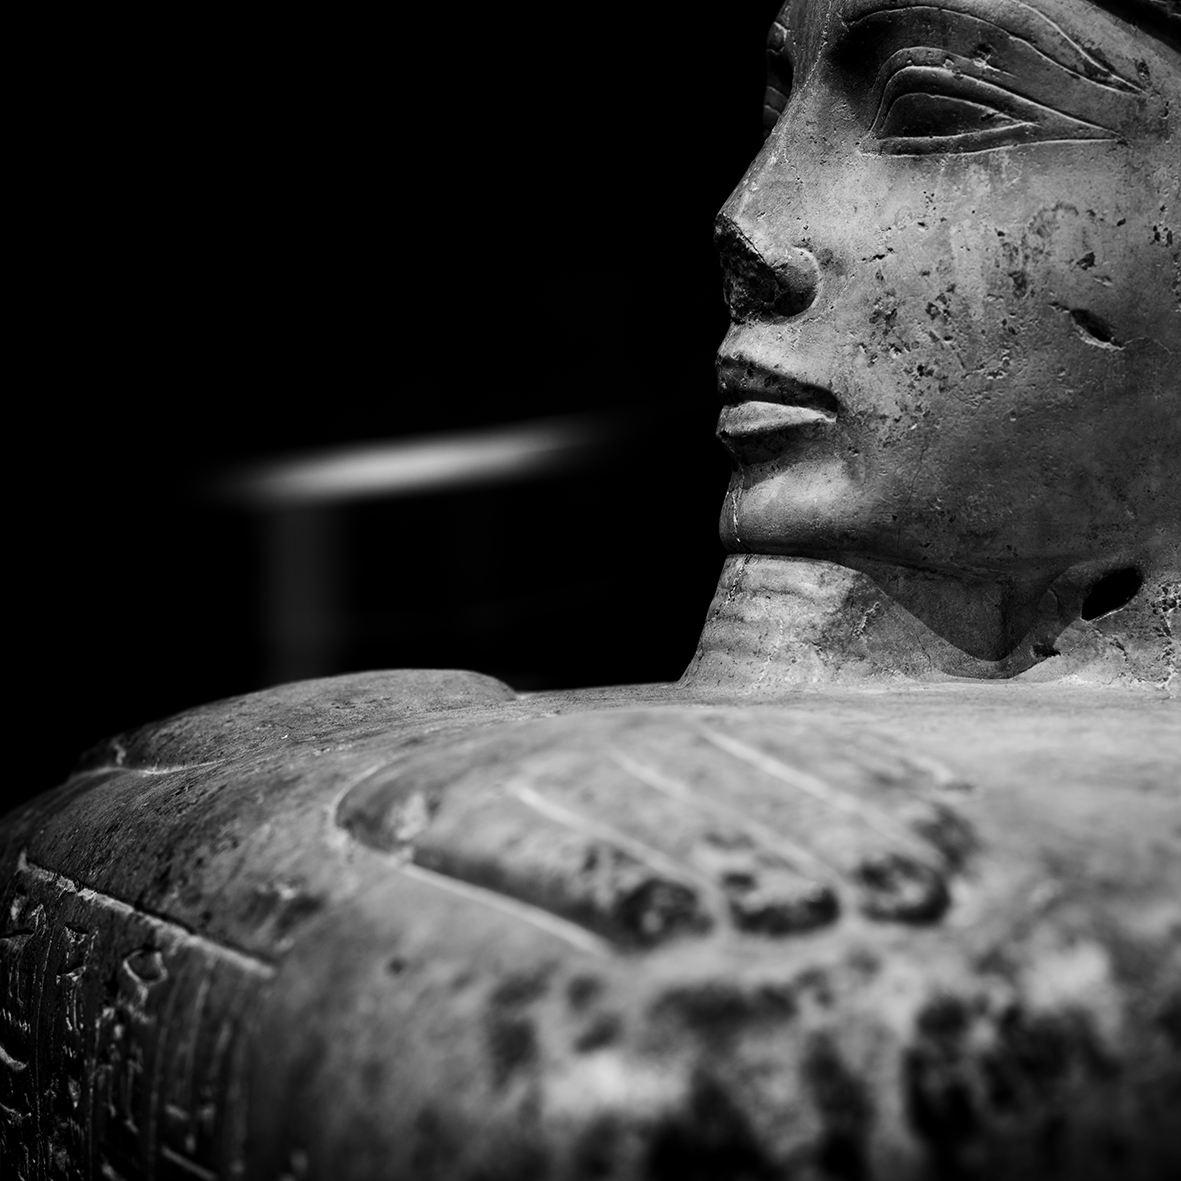 Staatliches Museum Ägyptischer Kunst, München, Block statue of the High Priest of Amun, Bakenkhonsu, new kingdom 18 emperor. dynasty, Thebes - Karnak, limestone